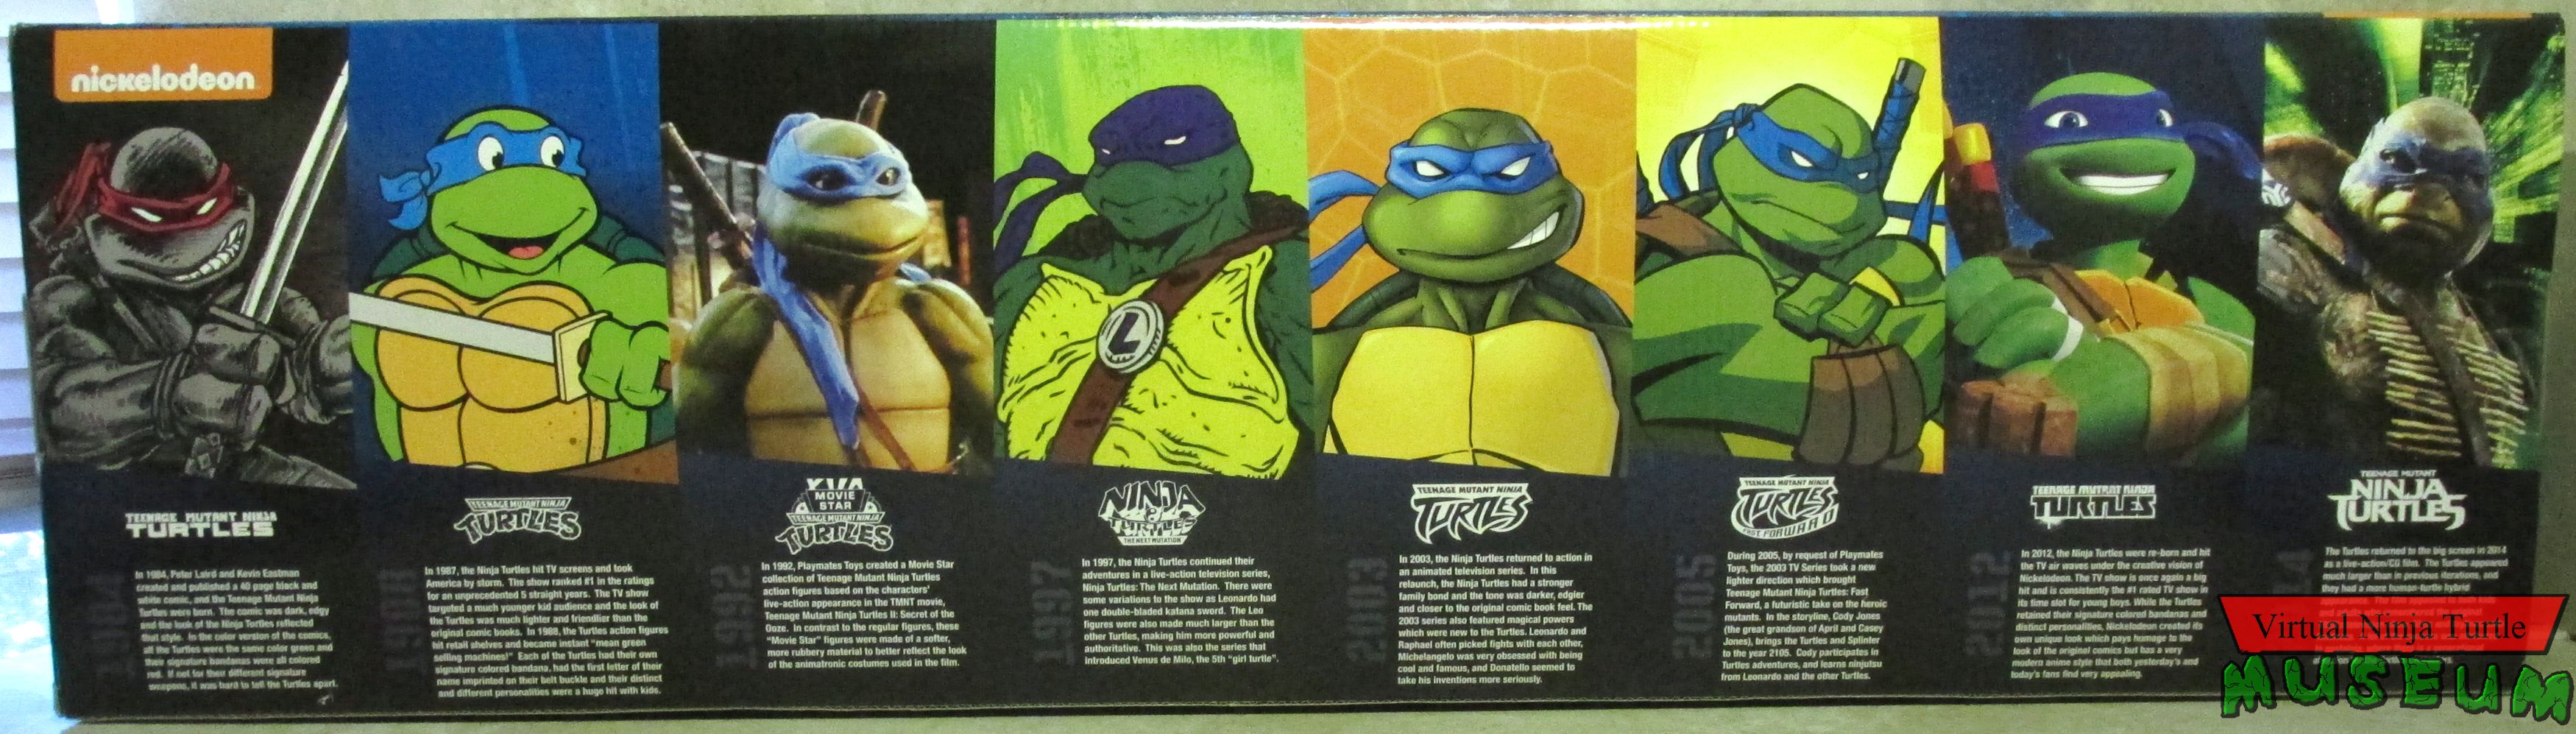 teenage mutant ninja turtles 2003 action figures